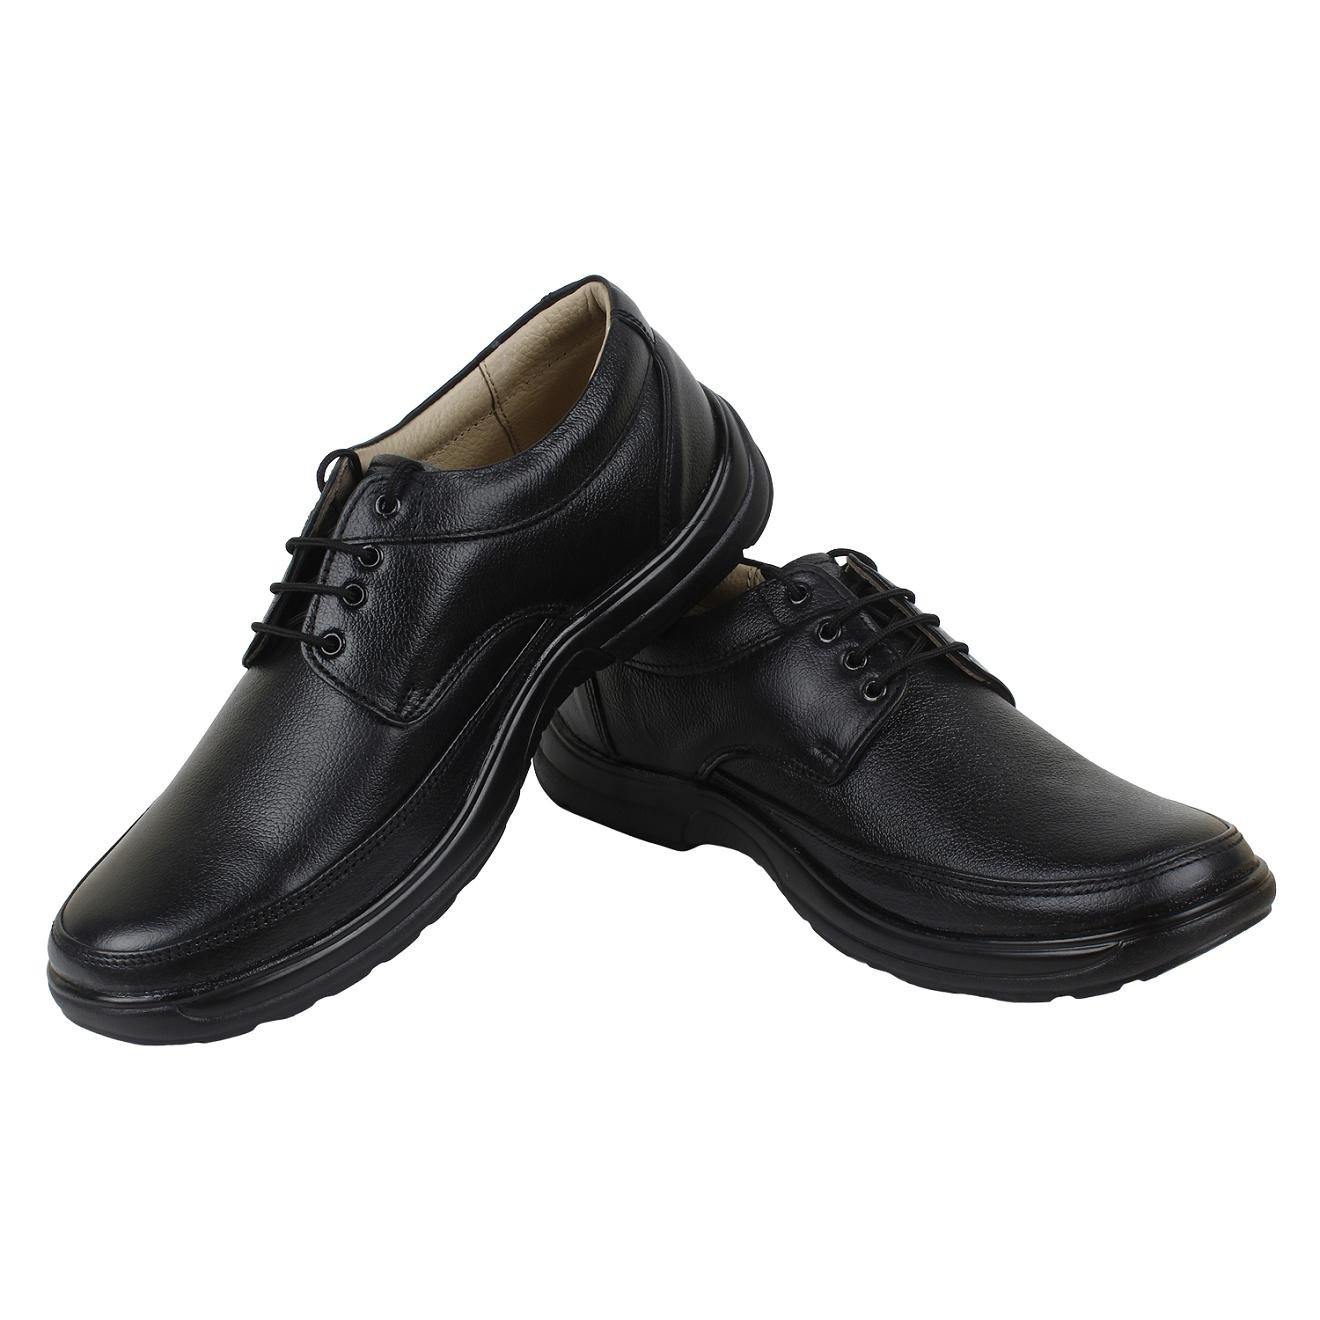 SeeandWear Formal Shoes For Men. Genuine Leather Black Office Wear Shoes. - SeeandWear